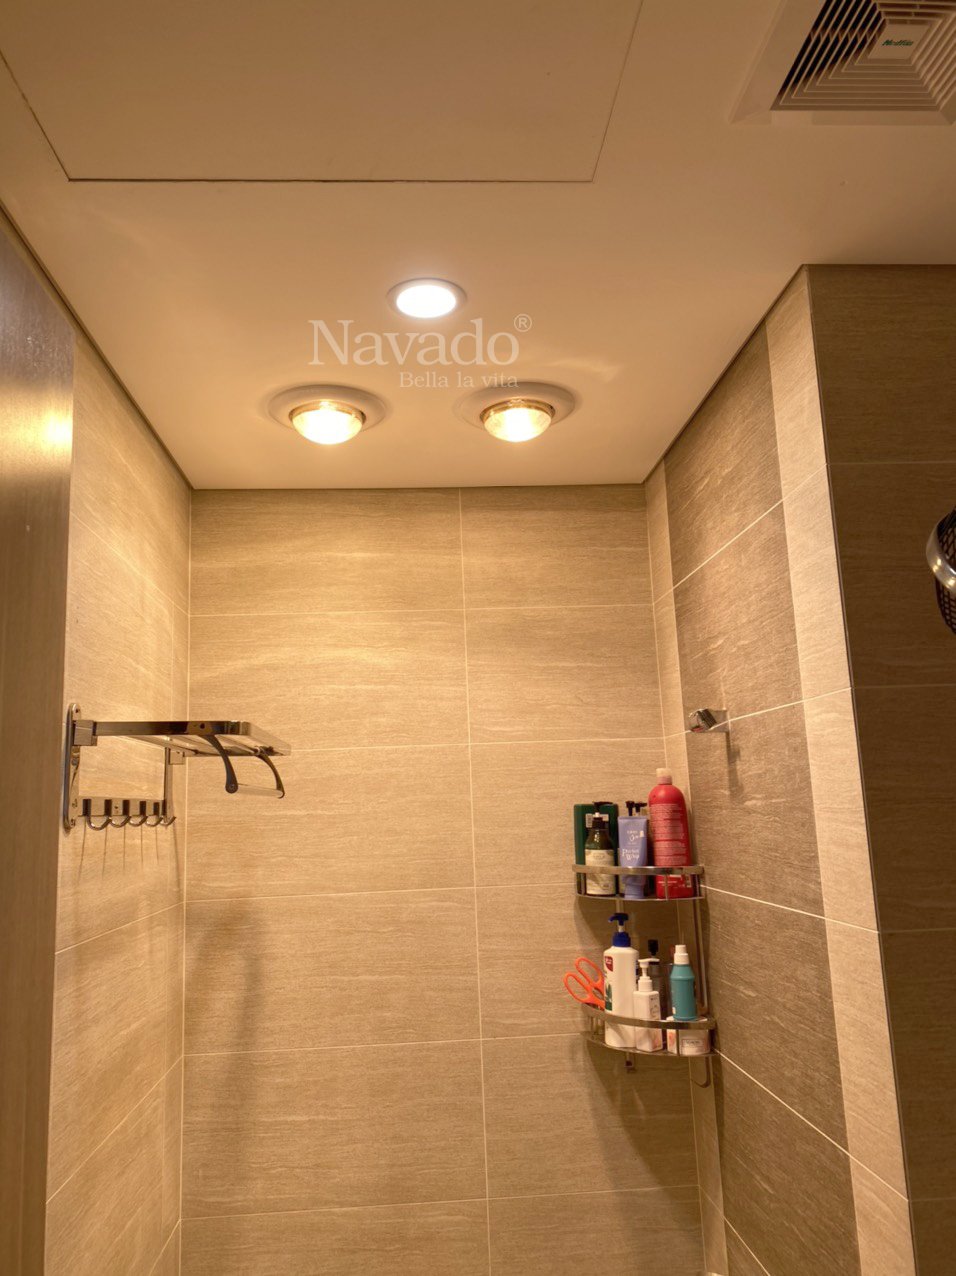 Đèn sưởi phòng tắm âm trần 2 bóng hồng ngoại Navado